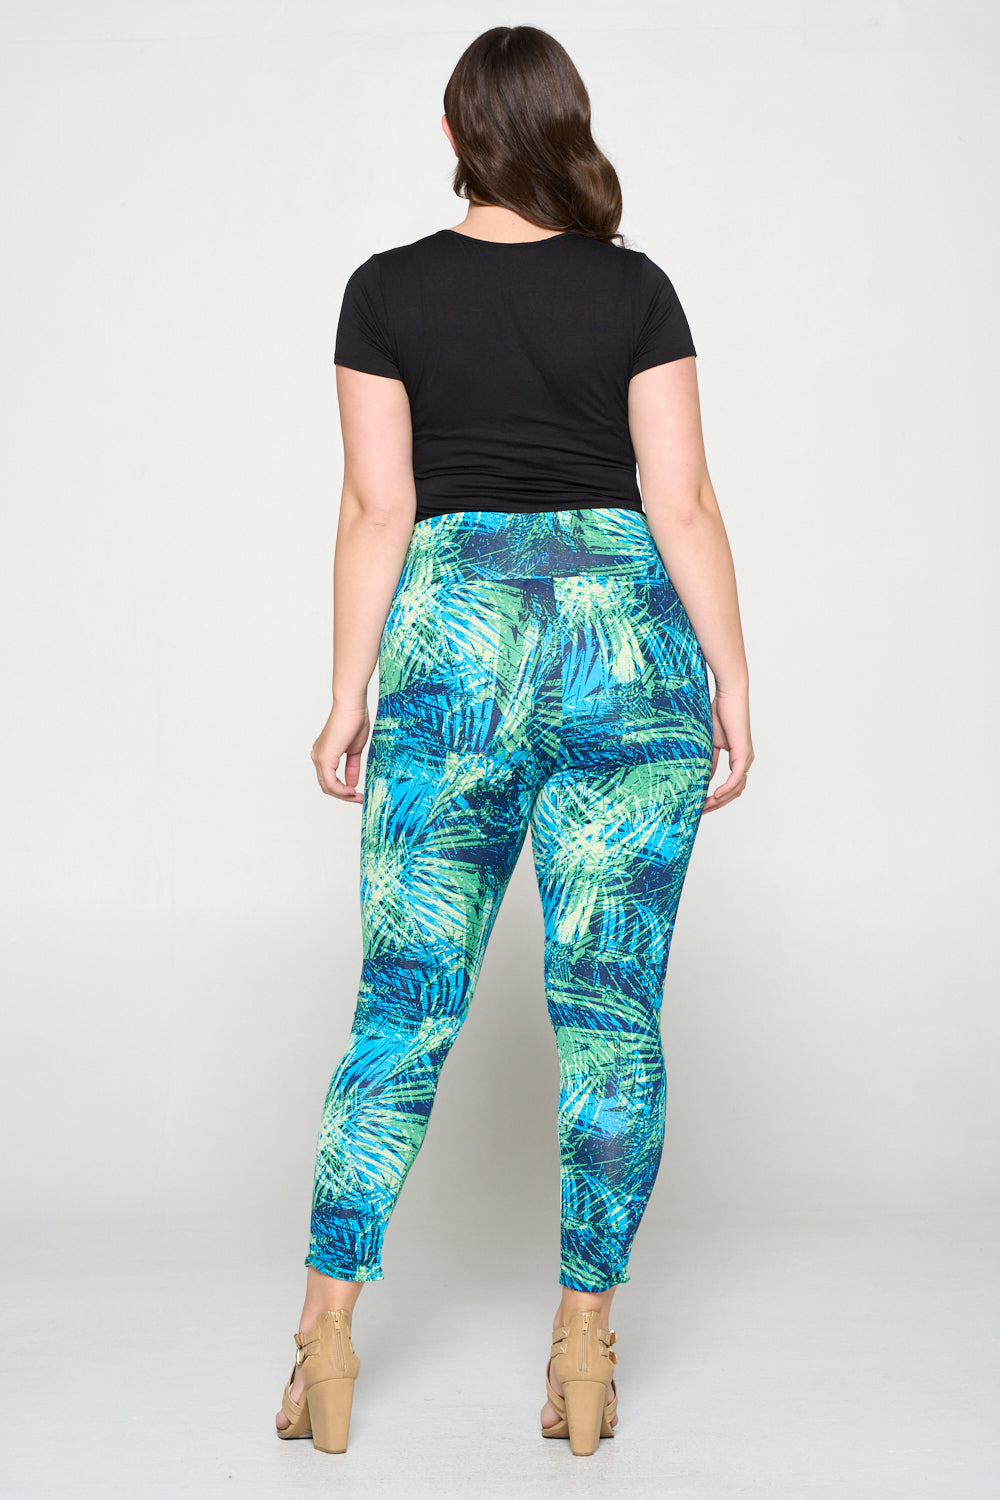 livd apparel plus size boutique tropical leaves yoga leggings